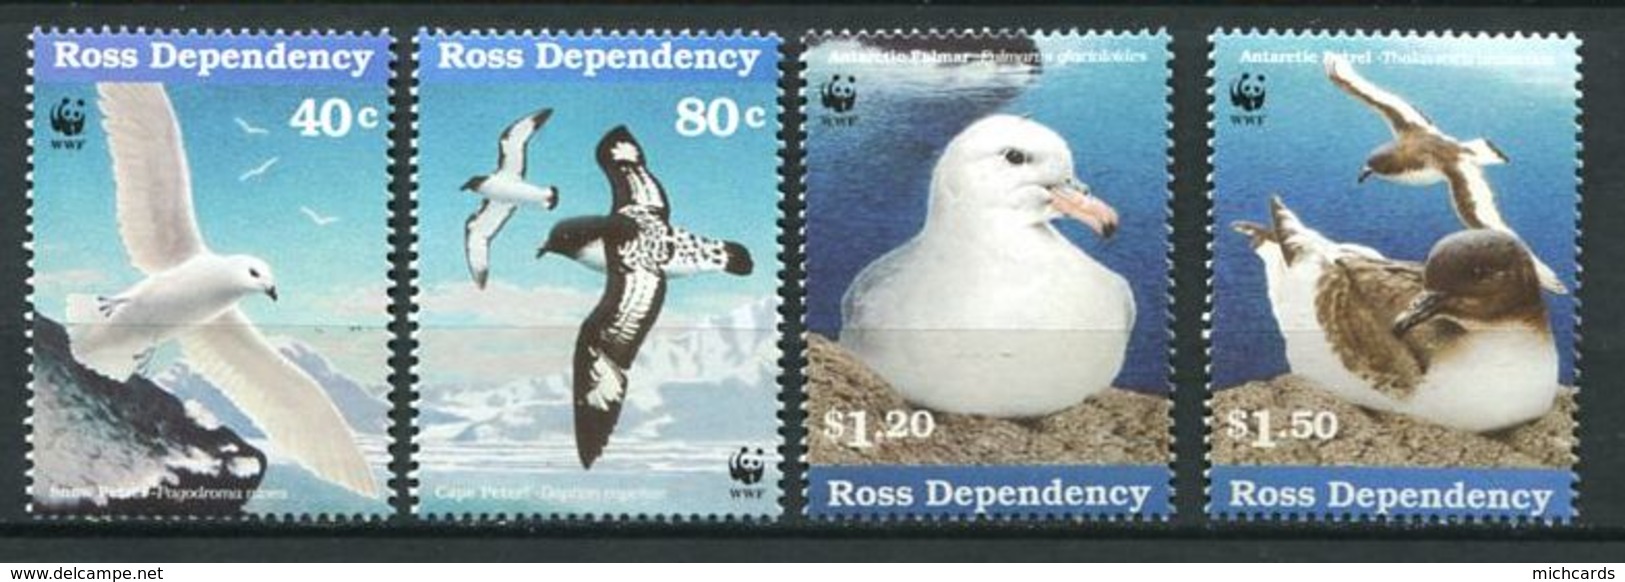 240 TERRE DE ROSS (Nle Zelande) 1997 - Yvert 56/59 - WWF Oiseau De Mer - Neuf ** (MNH) Sans Charniere - Neufs